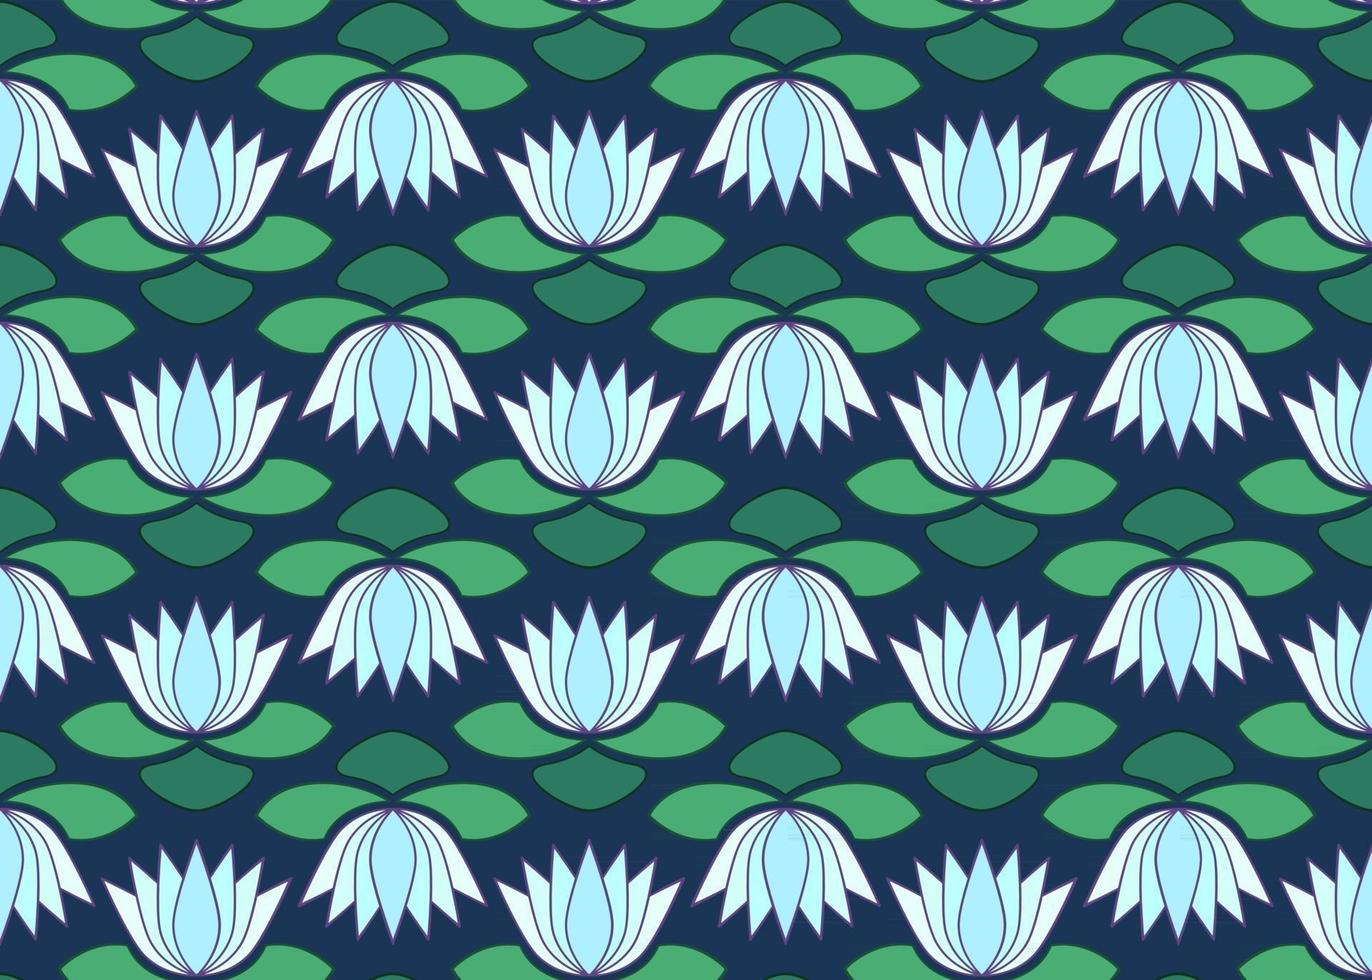 vector lotus naadloze patroon. waterlelie herhalend textielpatroon. patroon voor het bedrukken van sjaals, kleding en andere stoffen.